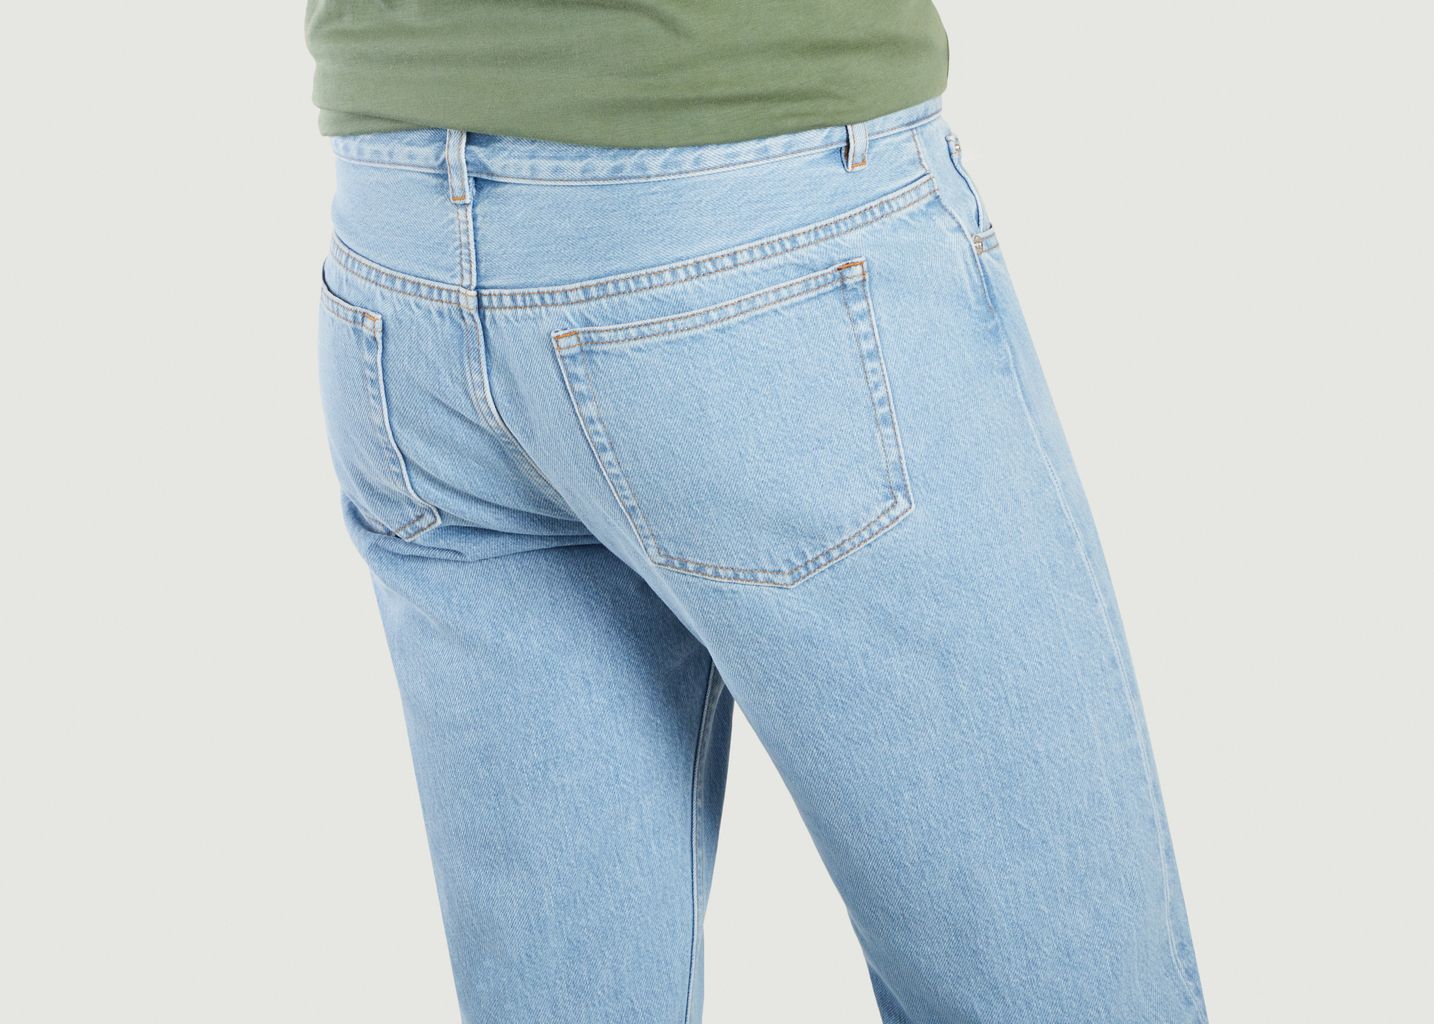 Petit New Standard jeans - A.P.C.